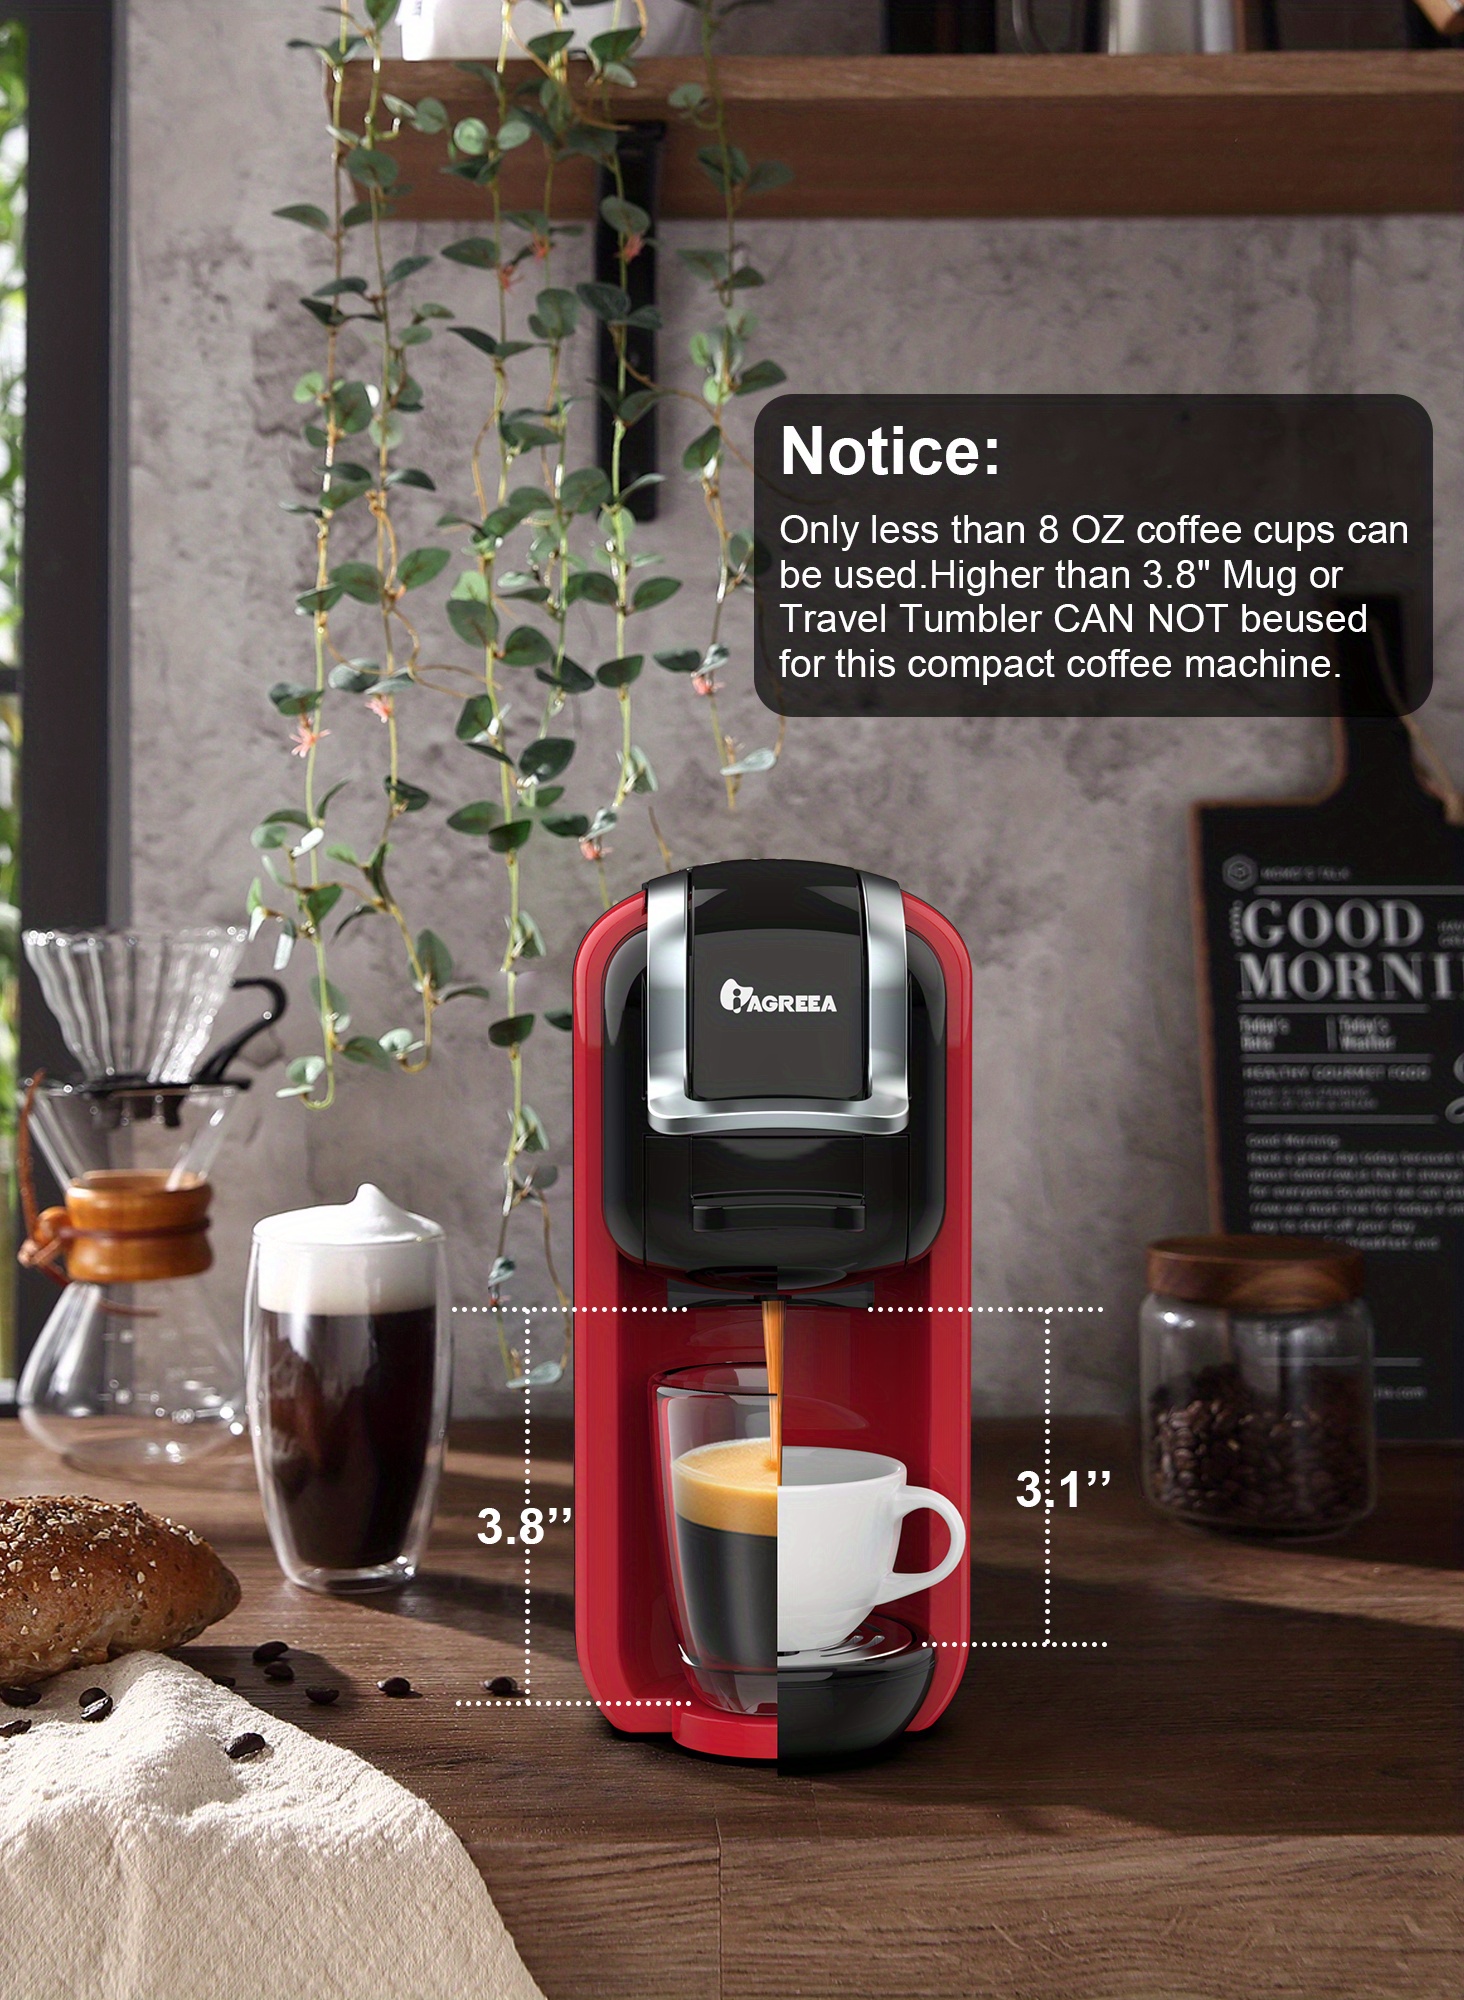 Pod Coffee Maker Single Serve, HiBREW 5-in-1 Espresso Machine for Pods,  K-cup*/Nes* Original/DG*/ESE Pod/Espresso Powder Compatible, Cold/Hot Mode,  20